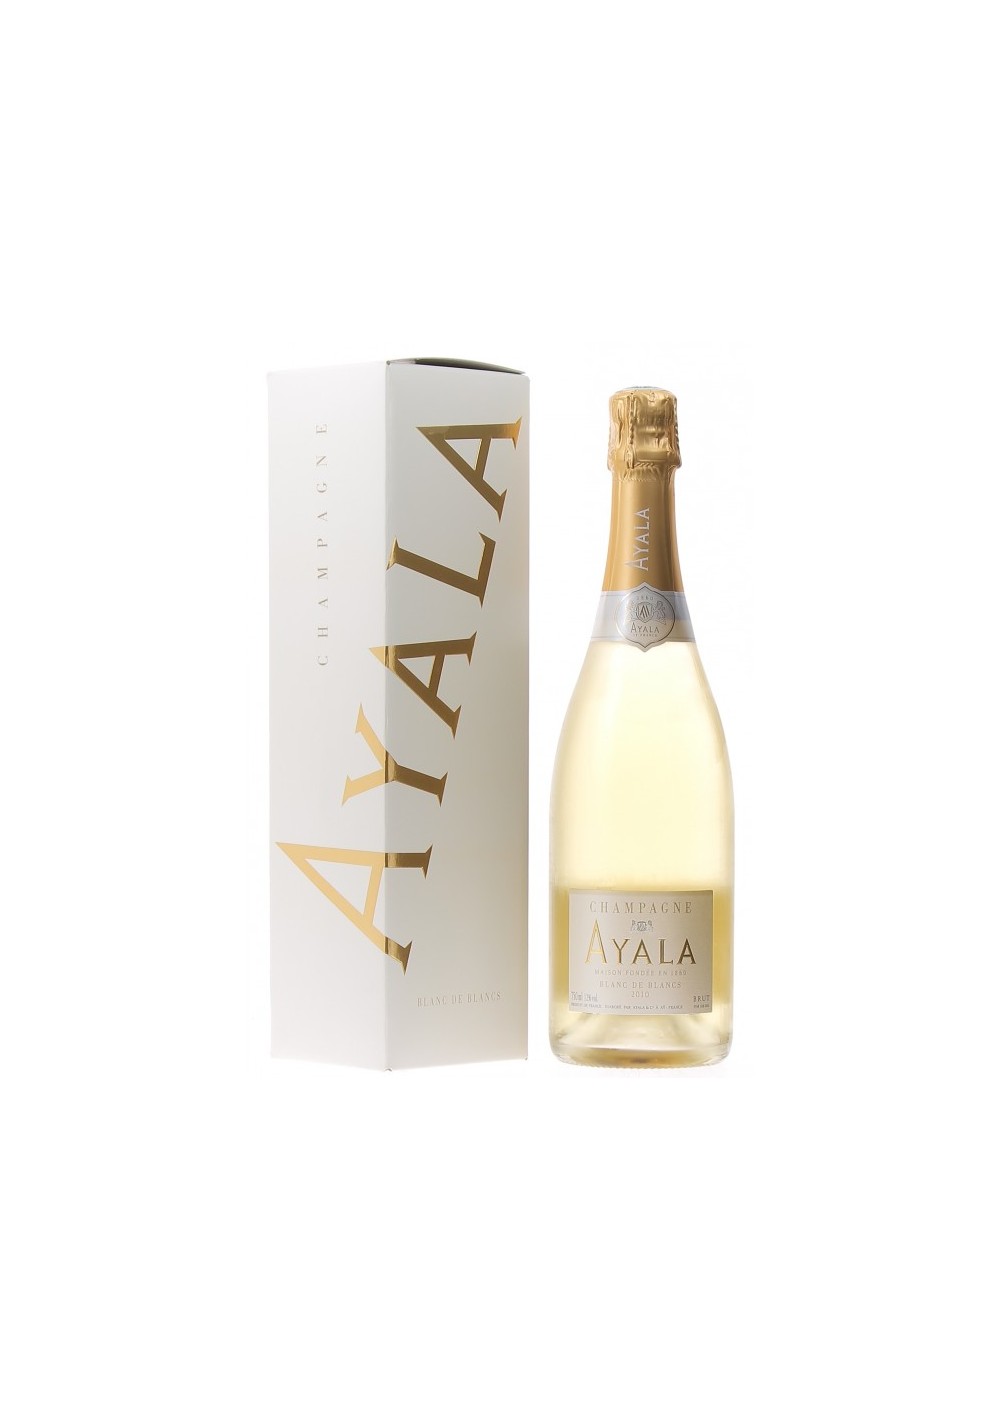 Champagne Ayala Blanc de Blancs